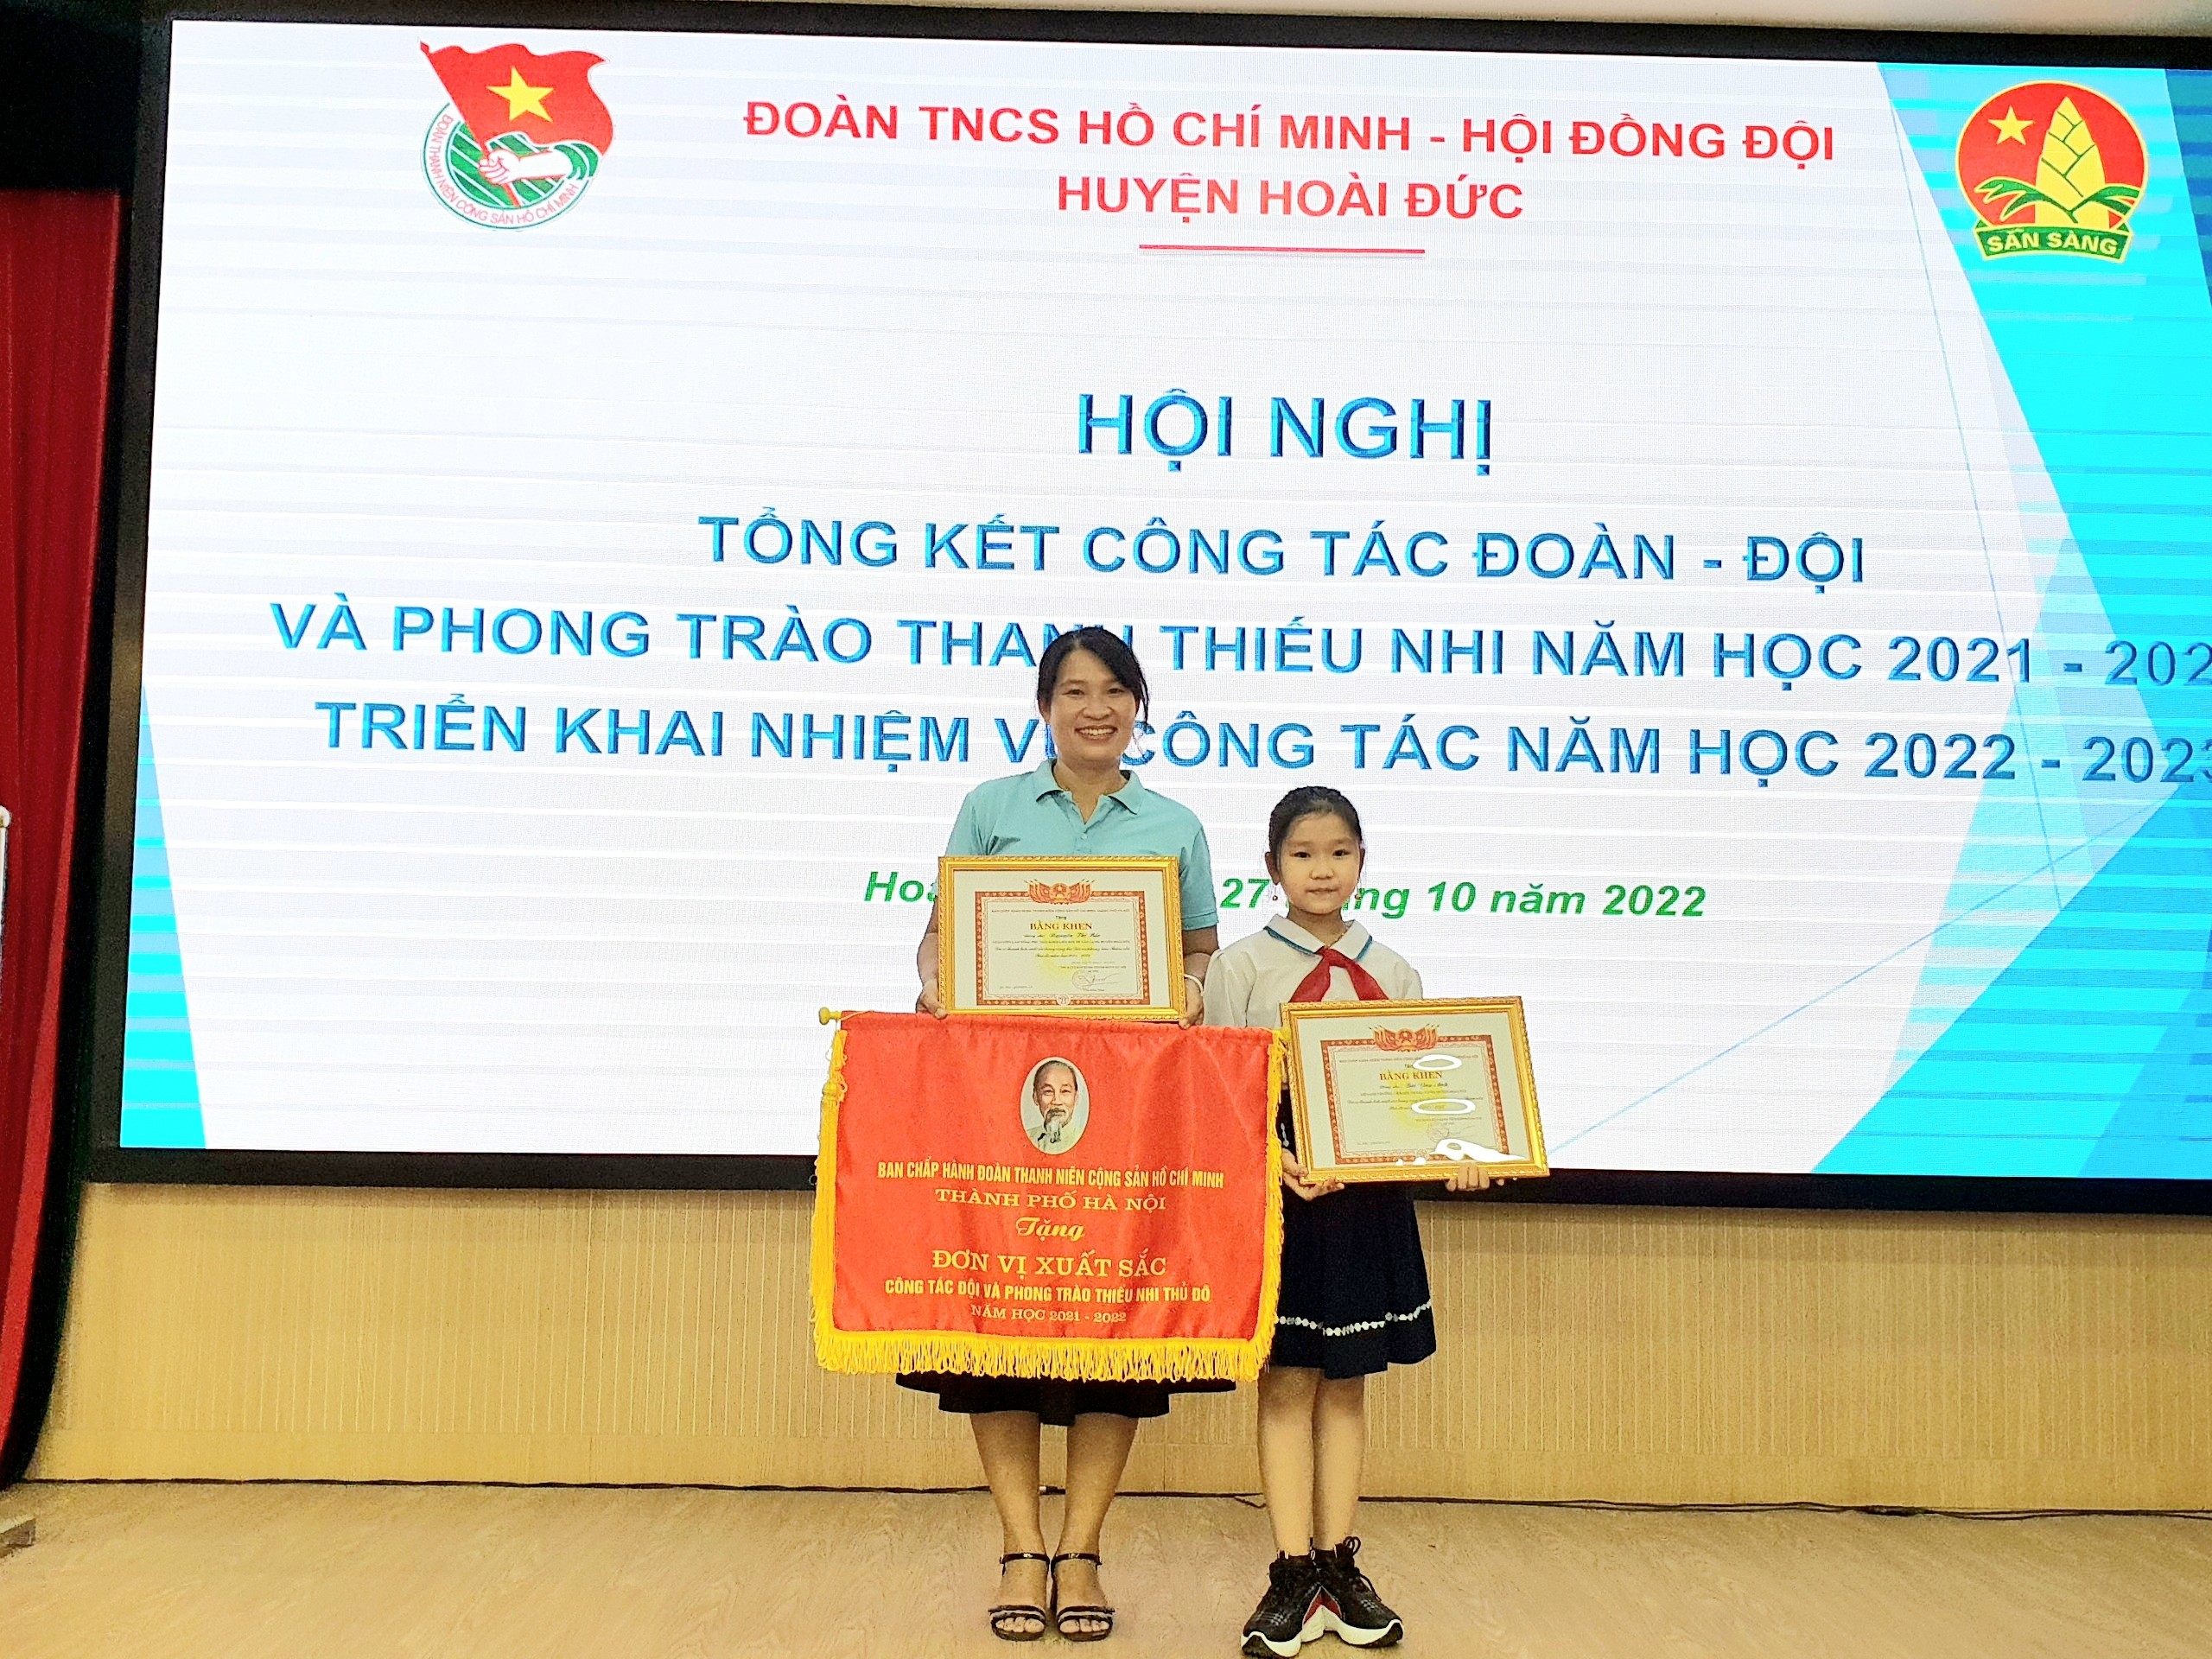 Trường TH Vân Canh nhận Cờ thi đua Đơn vị xuất sắc trong công tác Đội và PT Thiếu nhi Thủ đô năm học 2021-2022